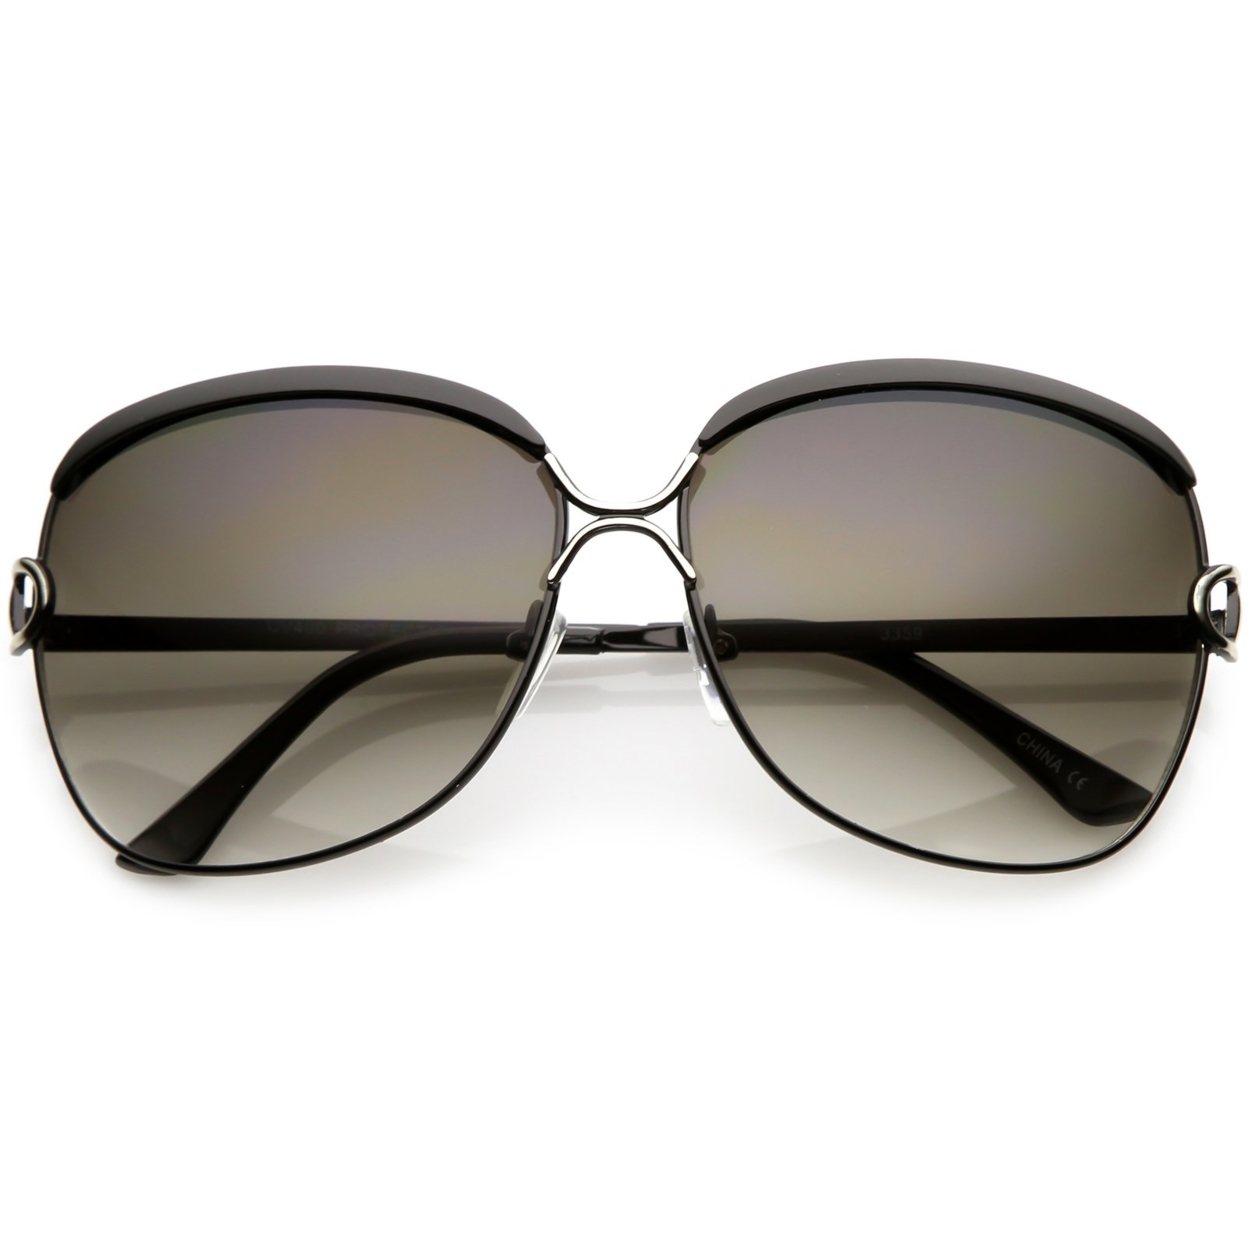 Women's Oversize Metal Square Sunglasses Unique Nose Bridge Neutral Colored Lens 63mm - Black Gold / Lavender